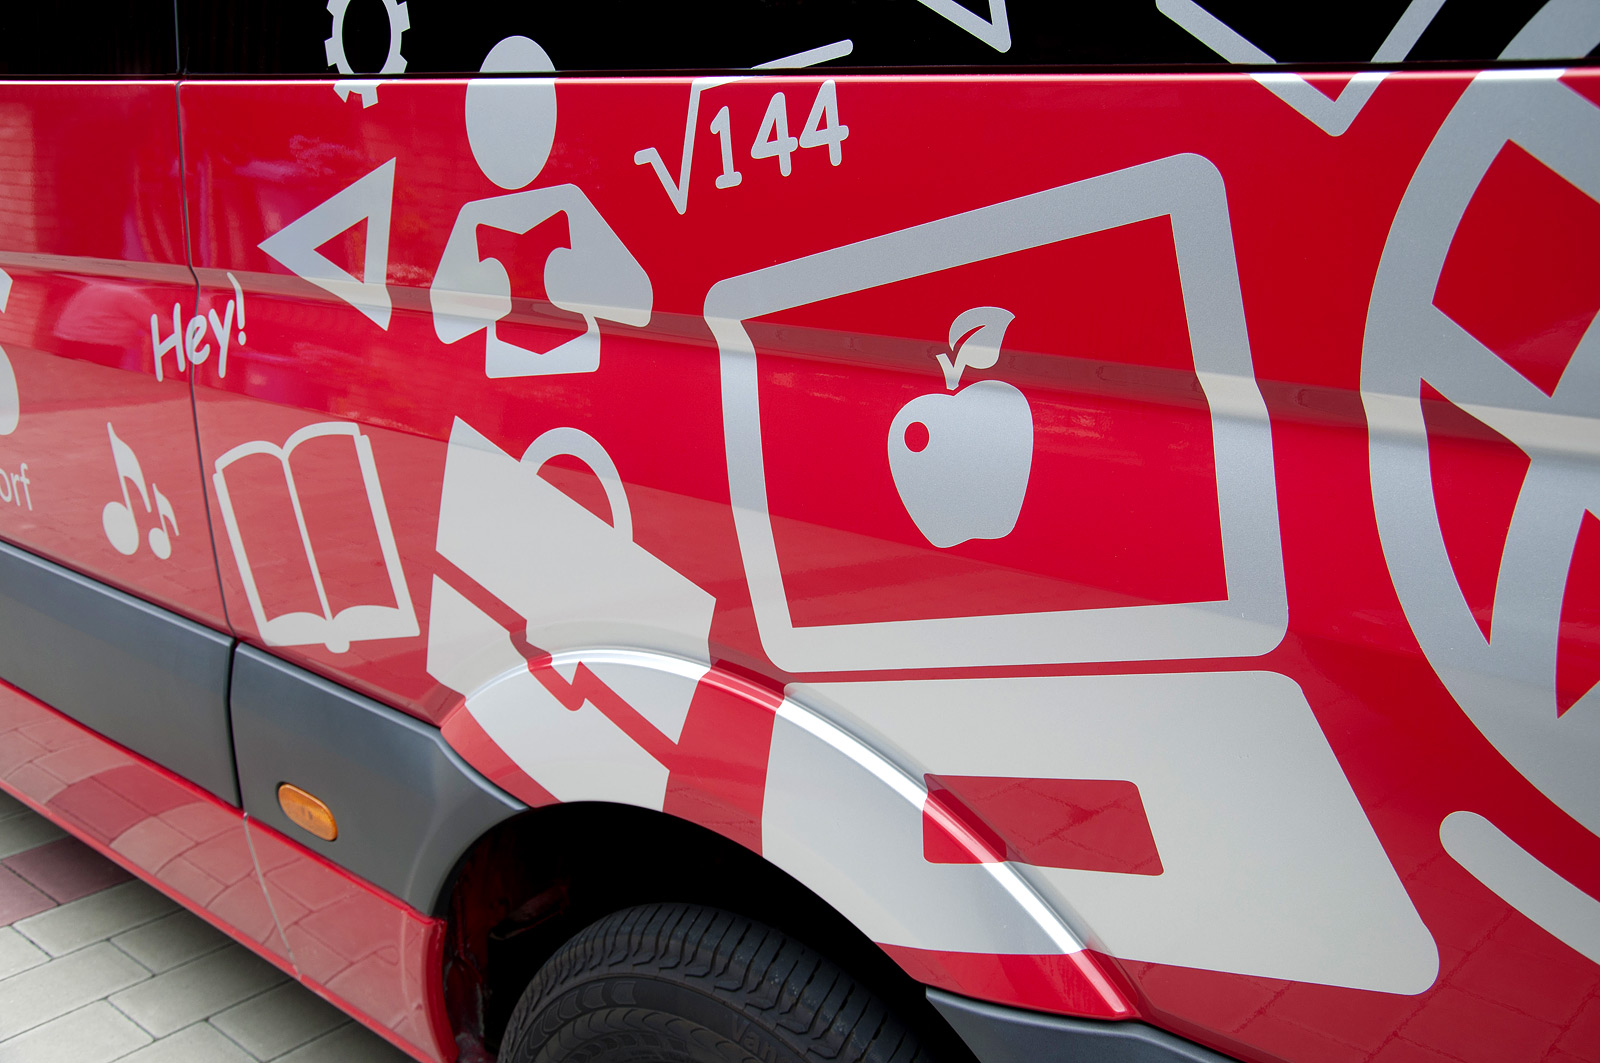 Eine Nahaufnahme des linken hinteren Teils des roten Schulbusses der Gemeinde Rückersdorf der mit verschiedenen grauen Symbolen beklebt wurde.